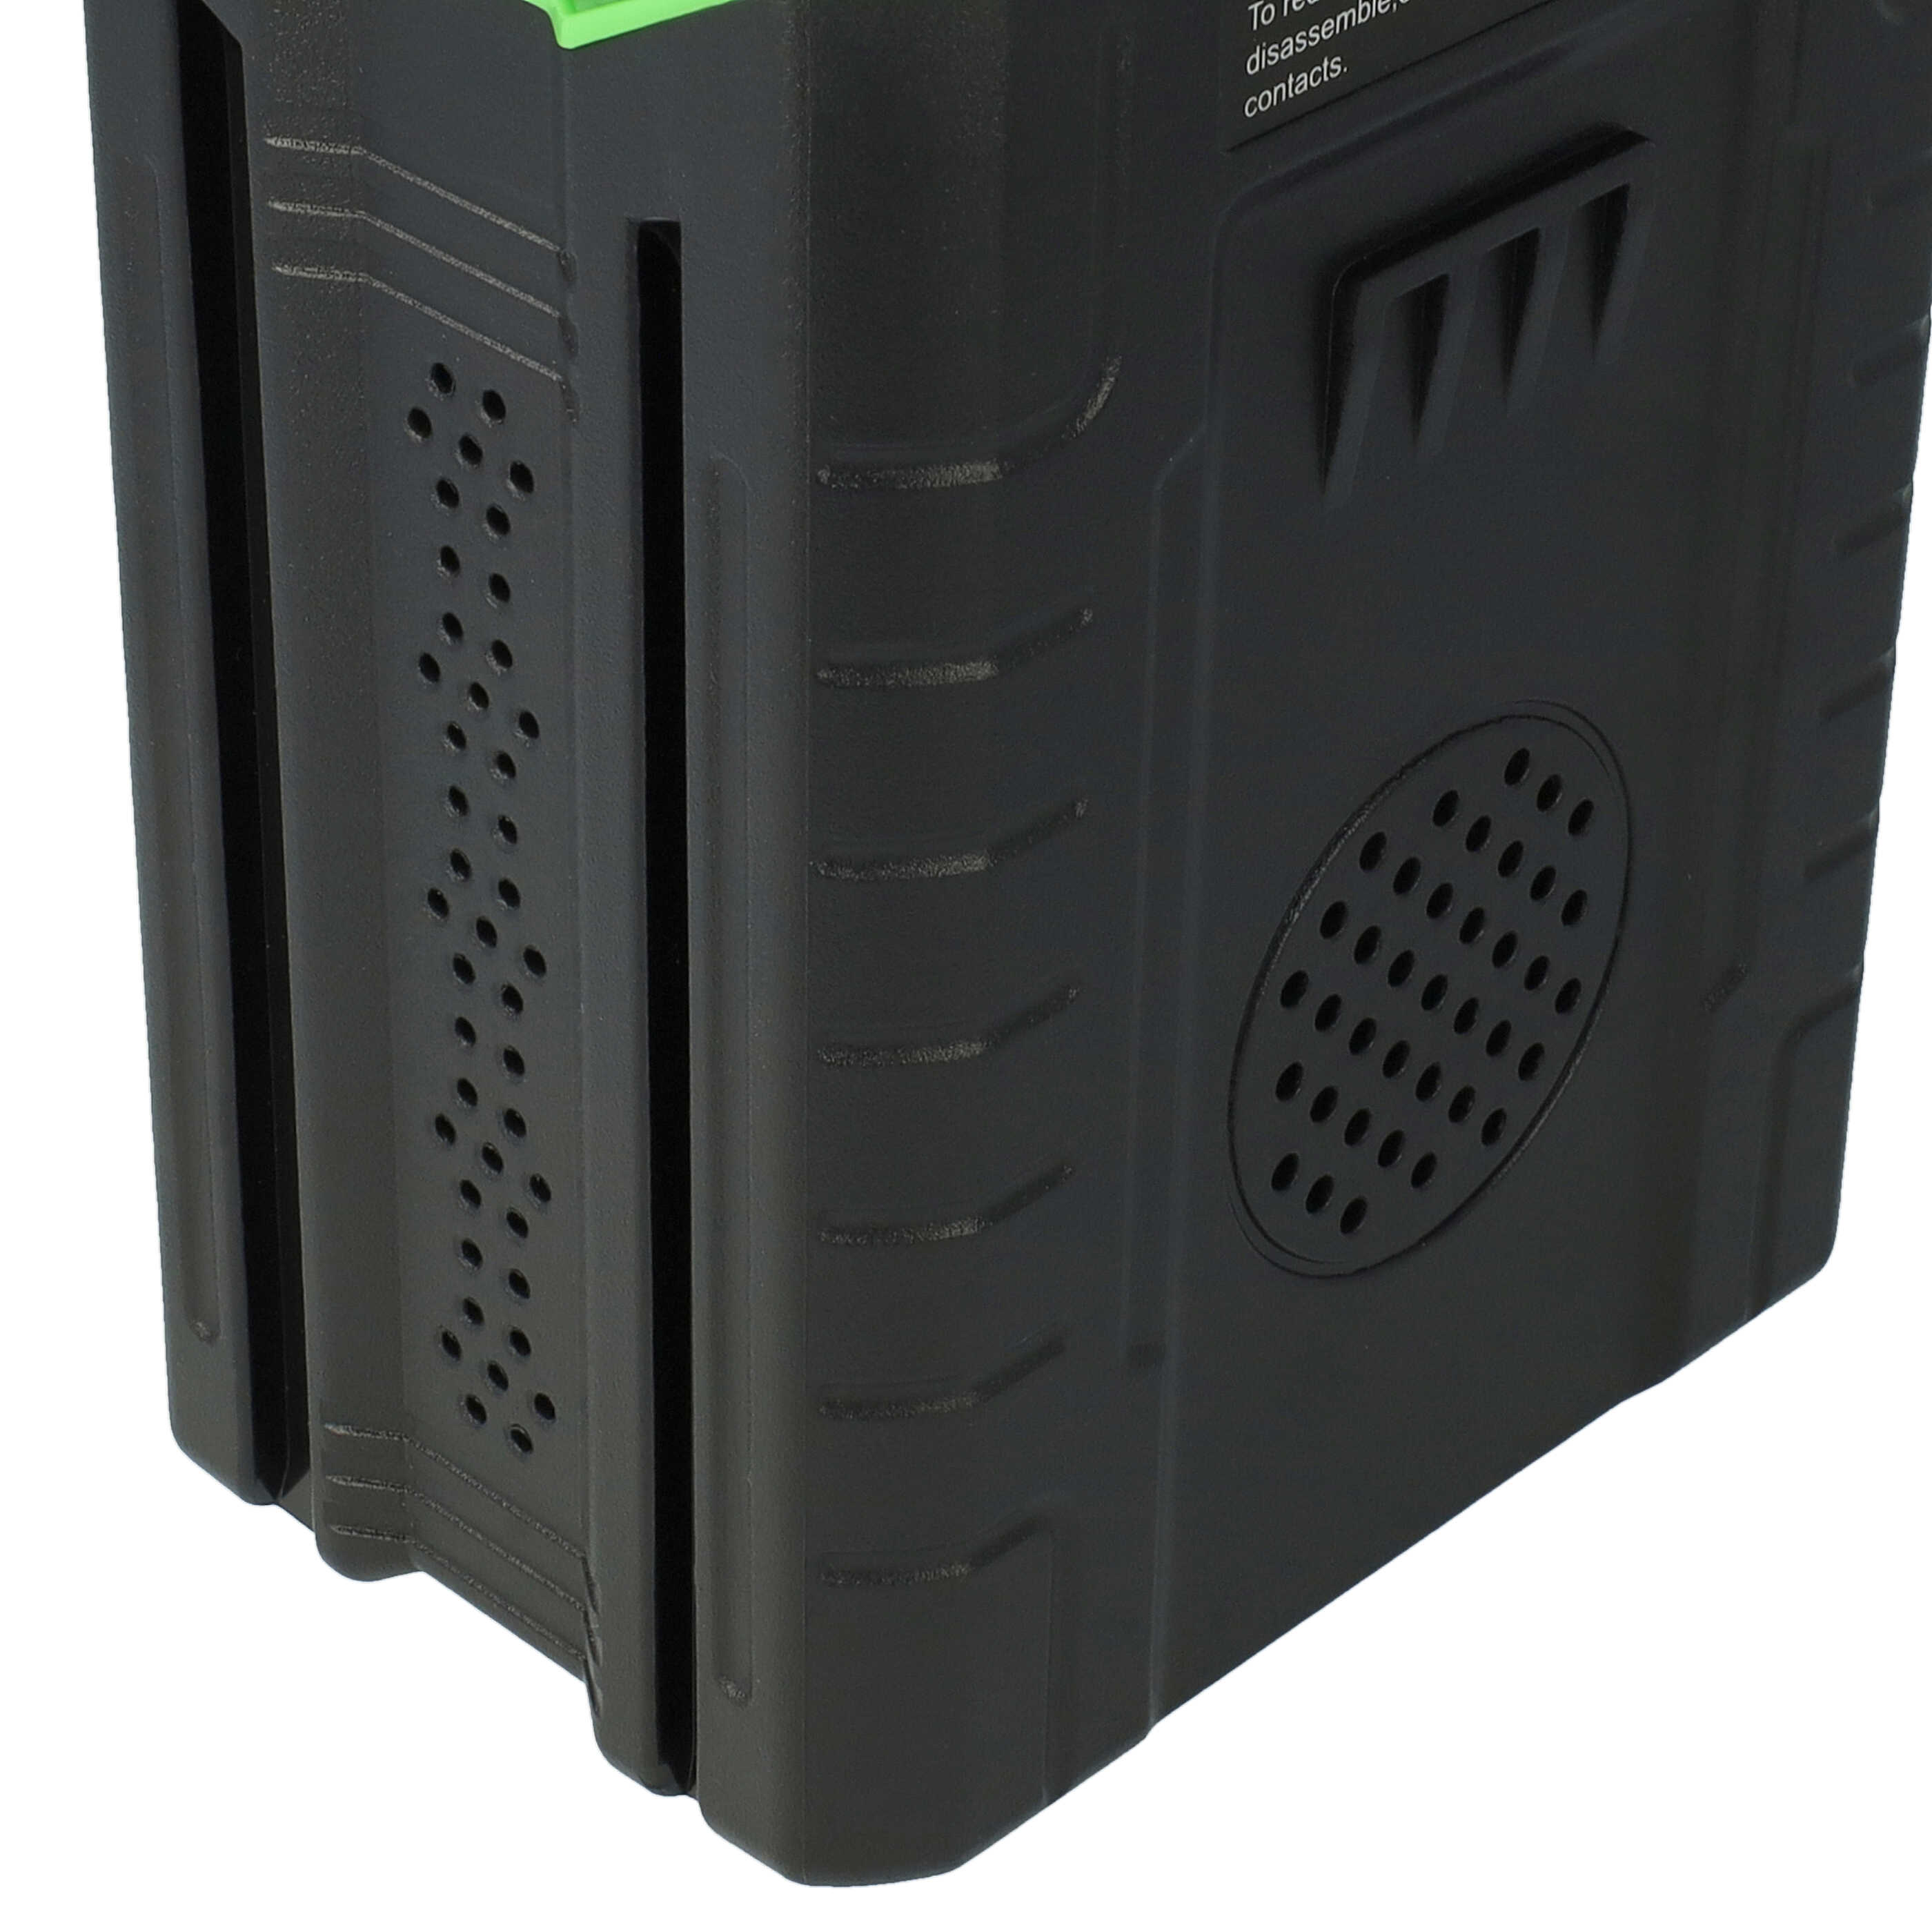 Akumulator do robota koszącego zamiennik Remarc 82V430G - 2500 mAh 80 V Li-Ion, czarny / zielony